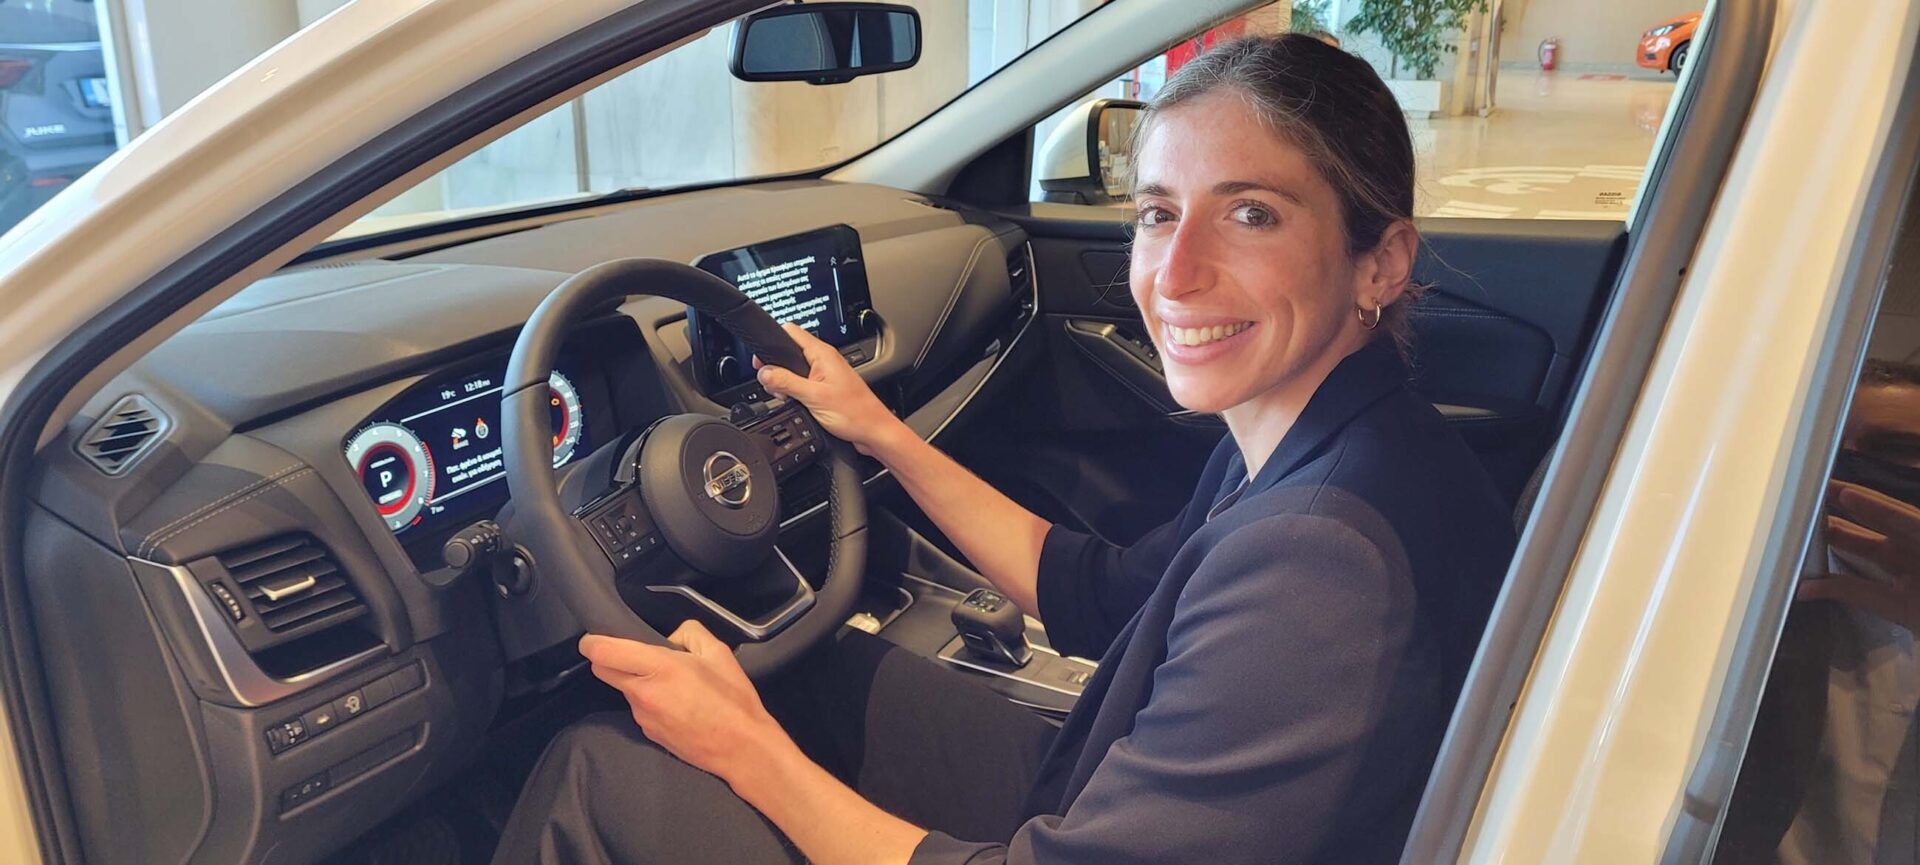 Η «χρυσή» Άννα Ντουντουνάκη οδηγεί ένα Nissan Qashqai!